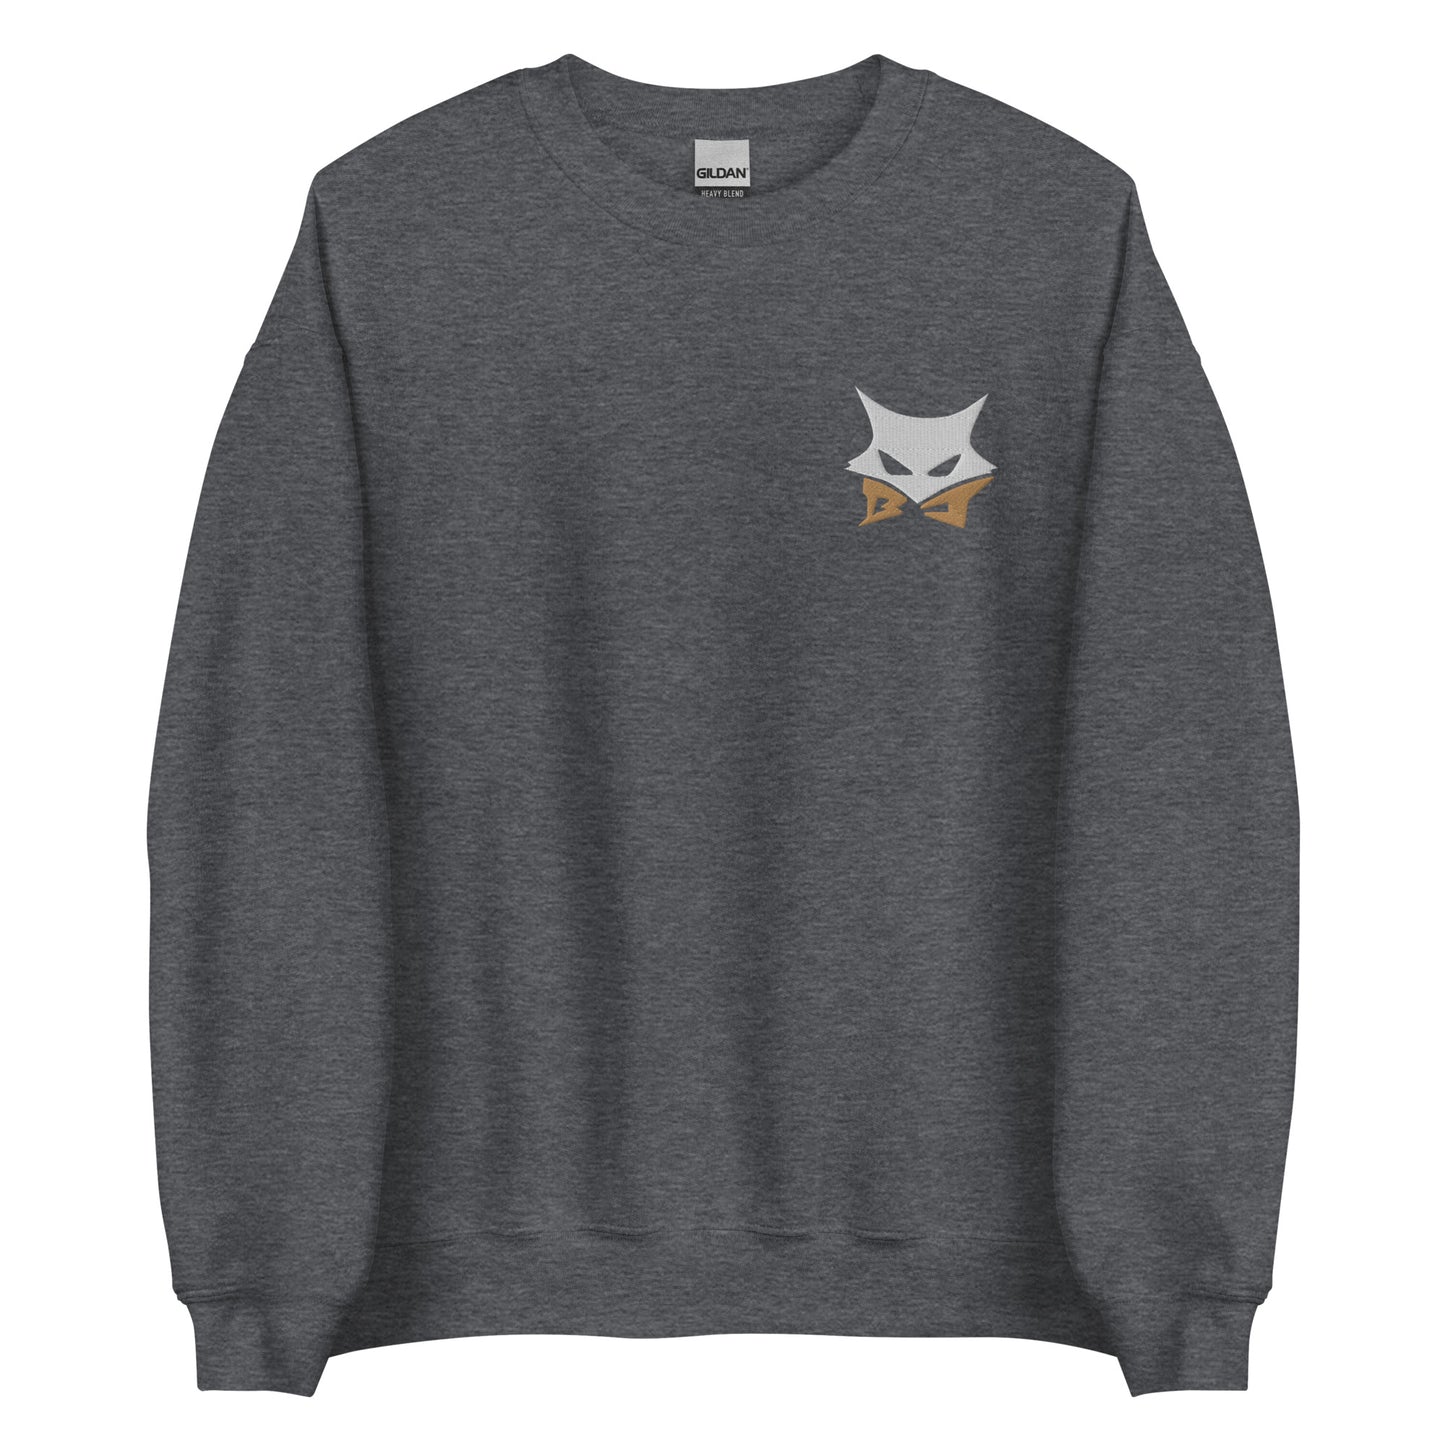 Black jackal embroidered Sweatshirt